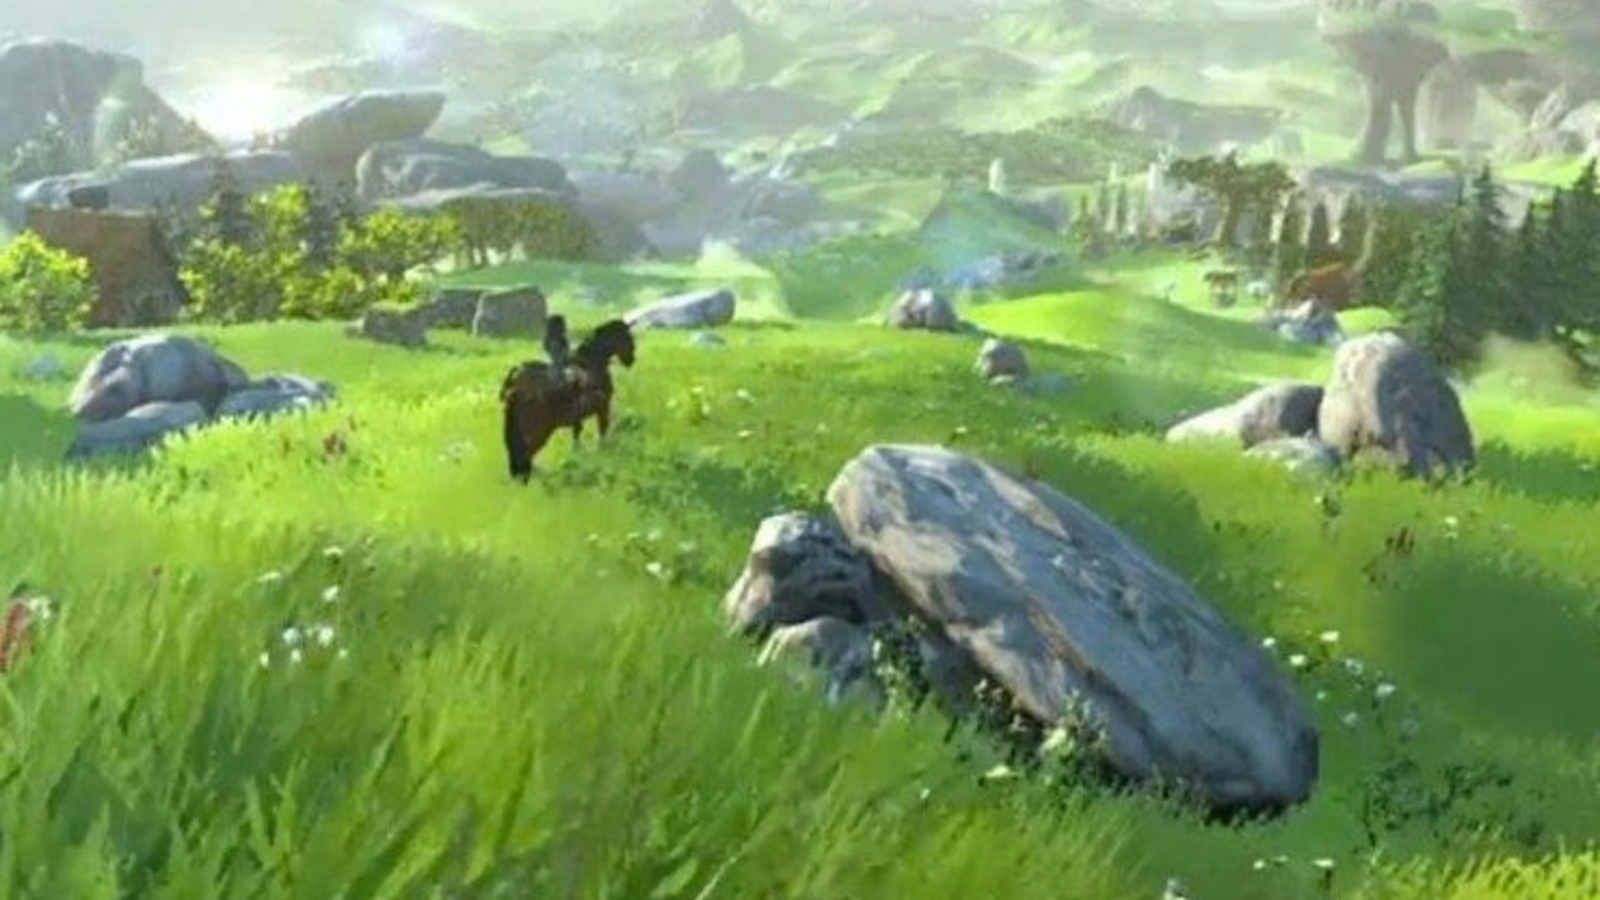 Zelda: Breath of the Wild' will be Nintendo's final Wii U game